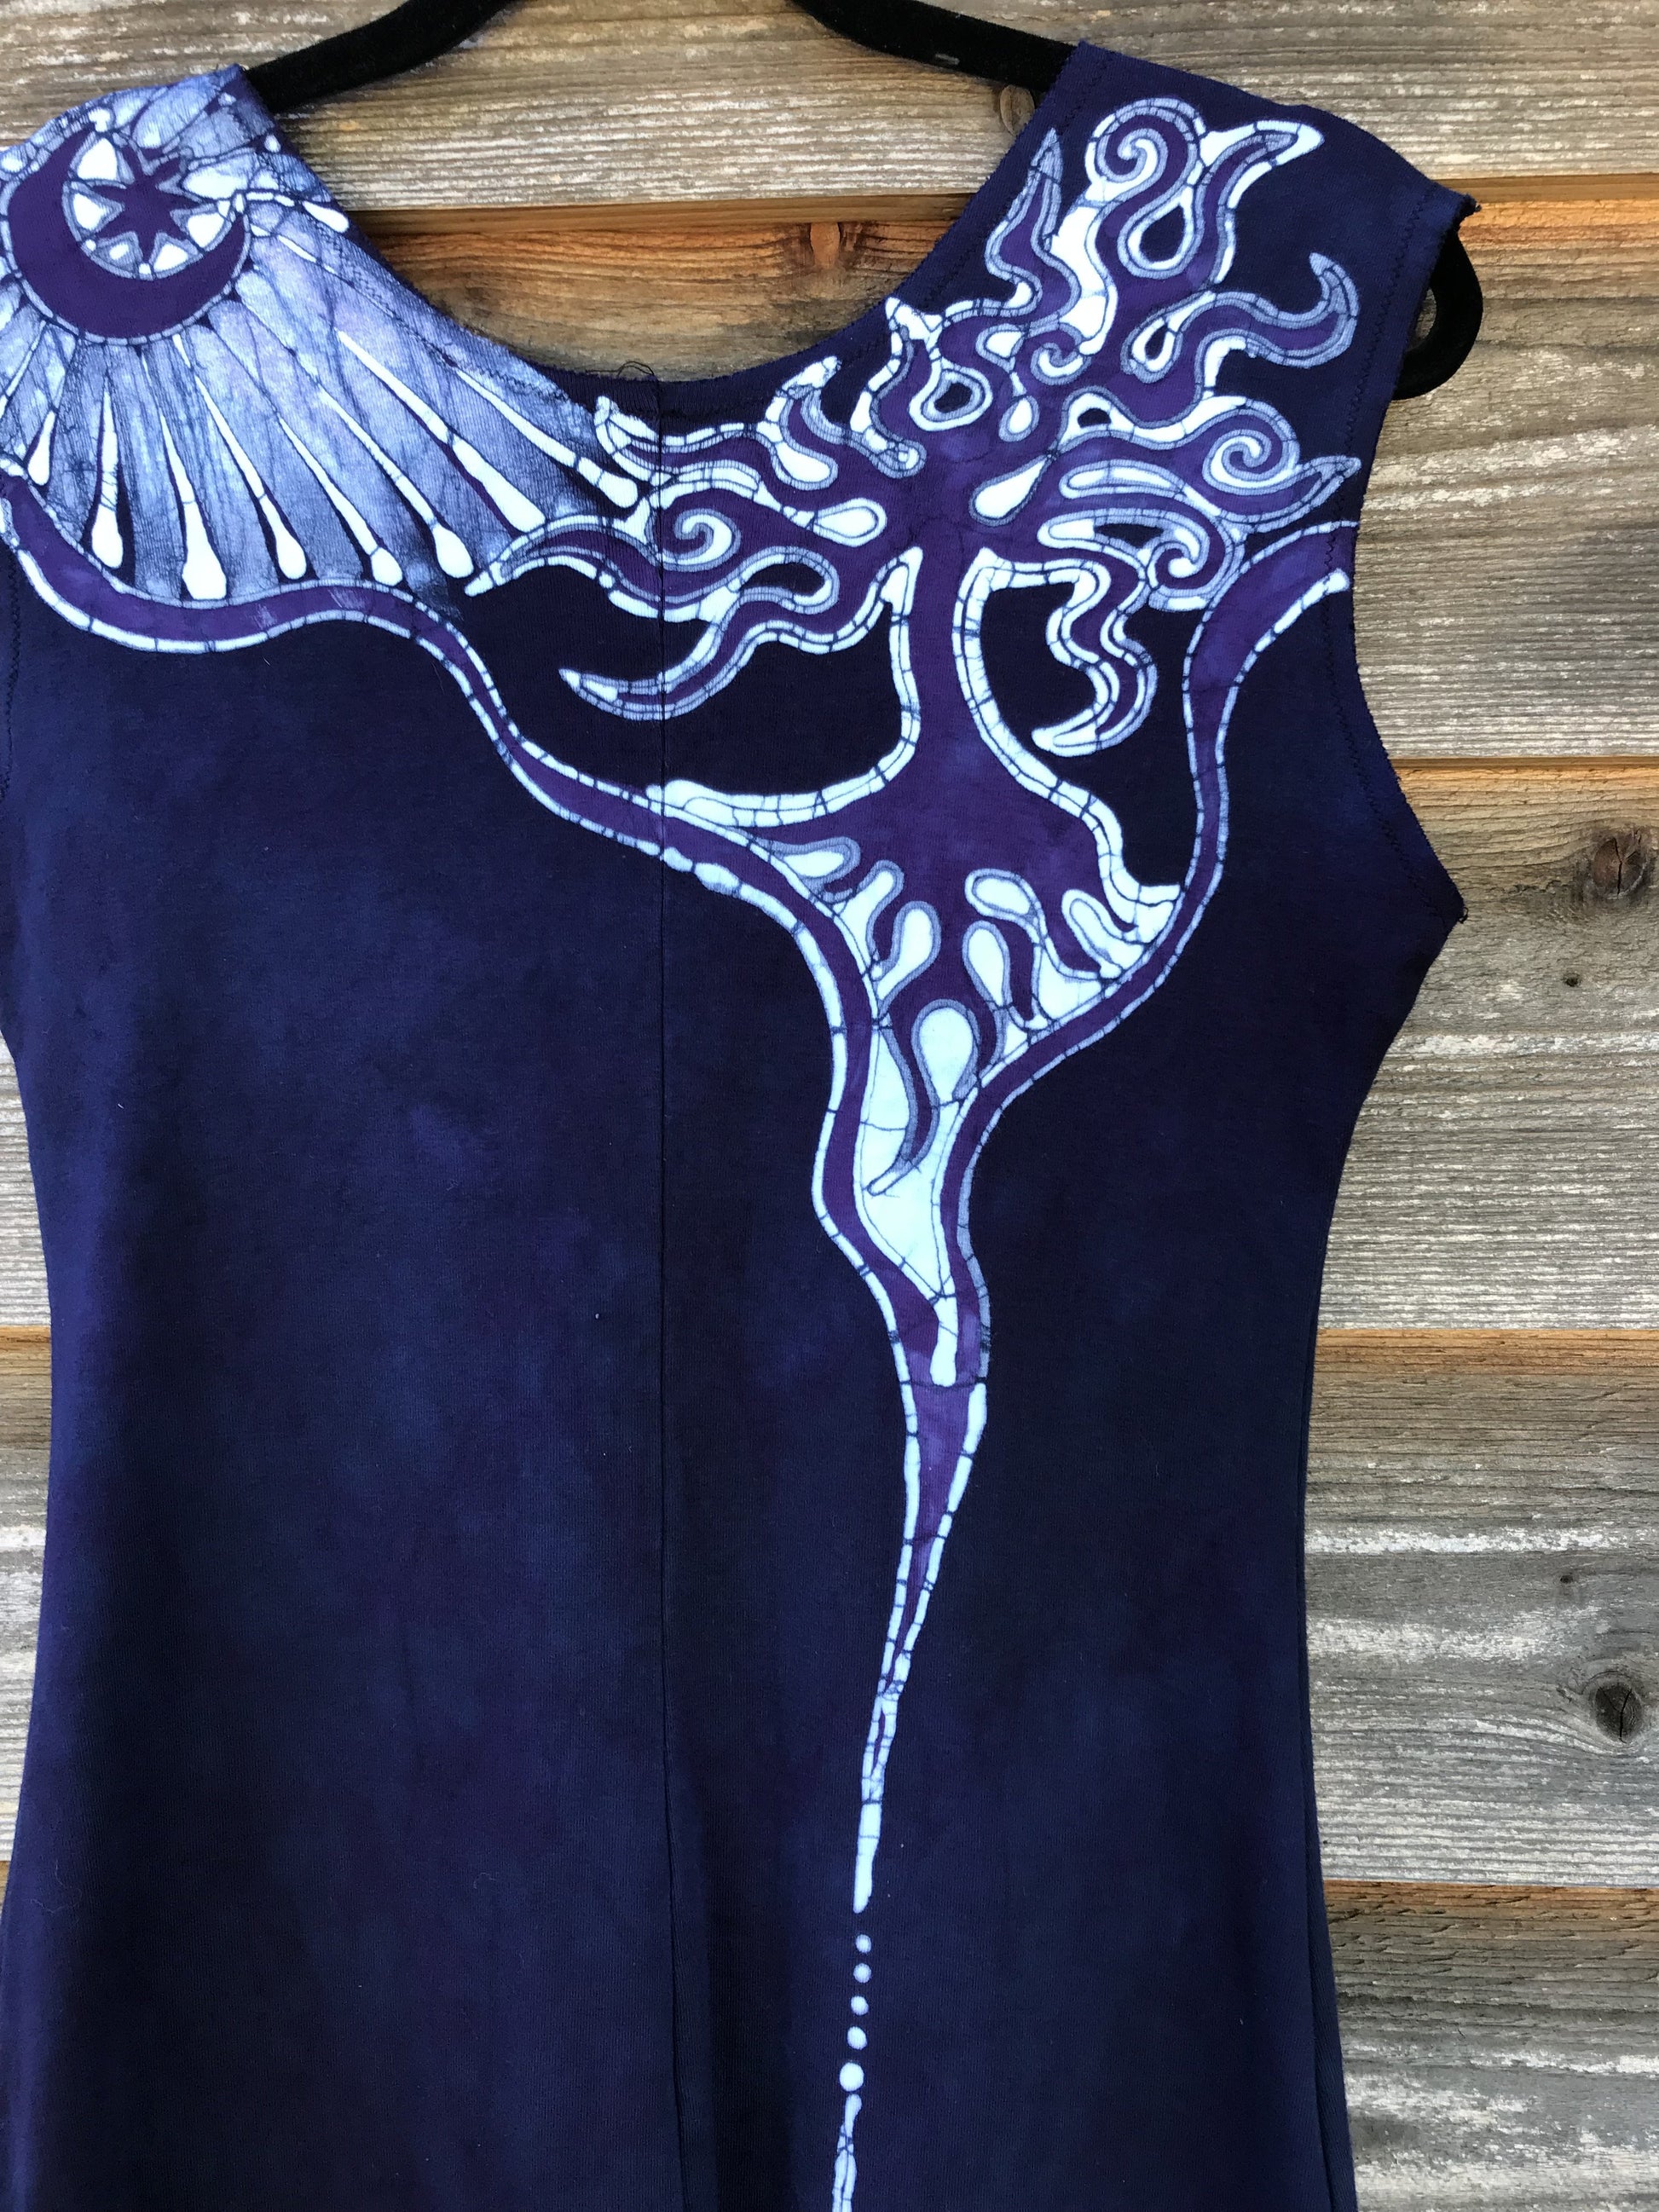 Blue Mountain Sun Batikwalla Handmade Batik Dress in Organic Cotton - Imperfect Batik Dresses Batikwalla 